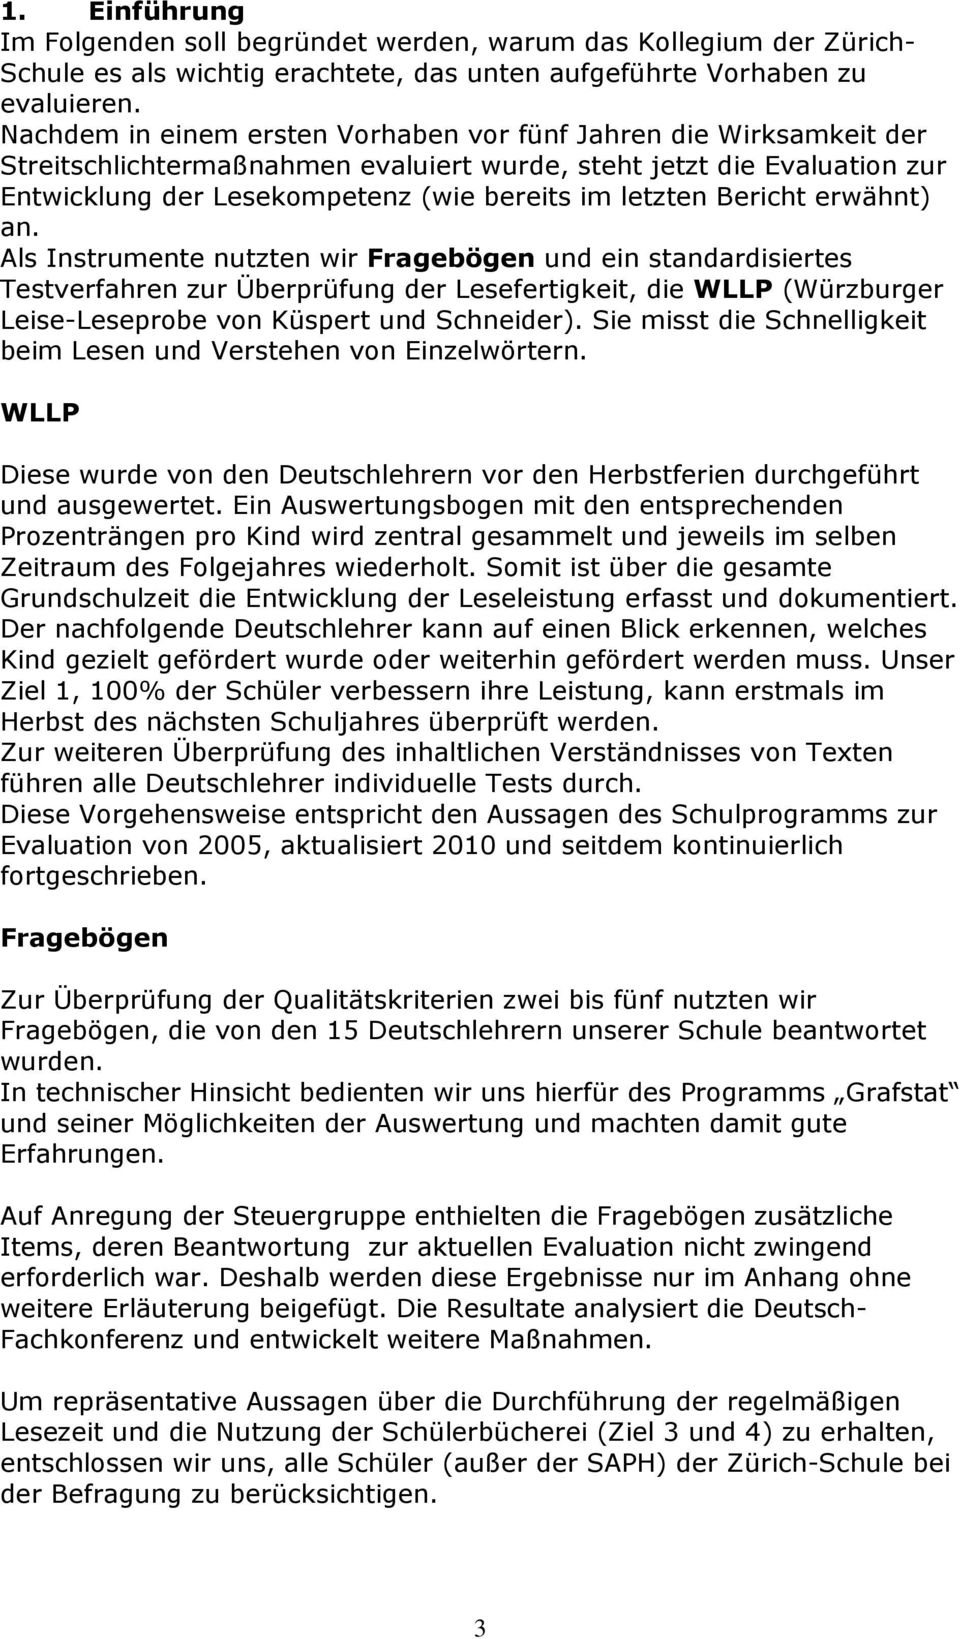 Bericht erwähnt) an. Als Instrumente nutzten wir Fragebögen und ein standardisiertes Testverfahren zur Überprüfung der Lesefertigkeit, die WLLP (Würzburger Leise-Leseprobe von Küspert und Schneider).